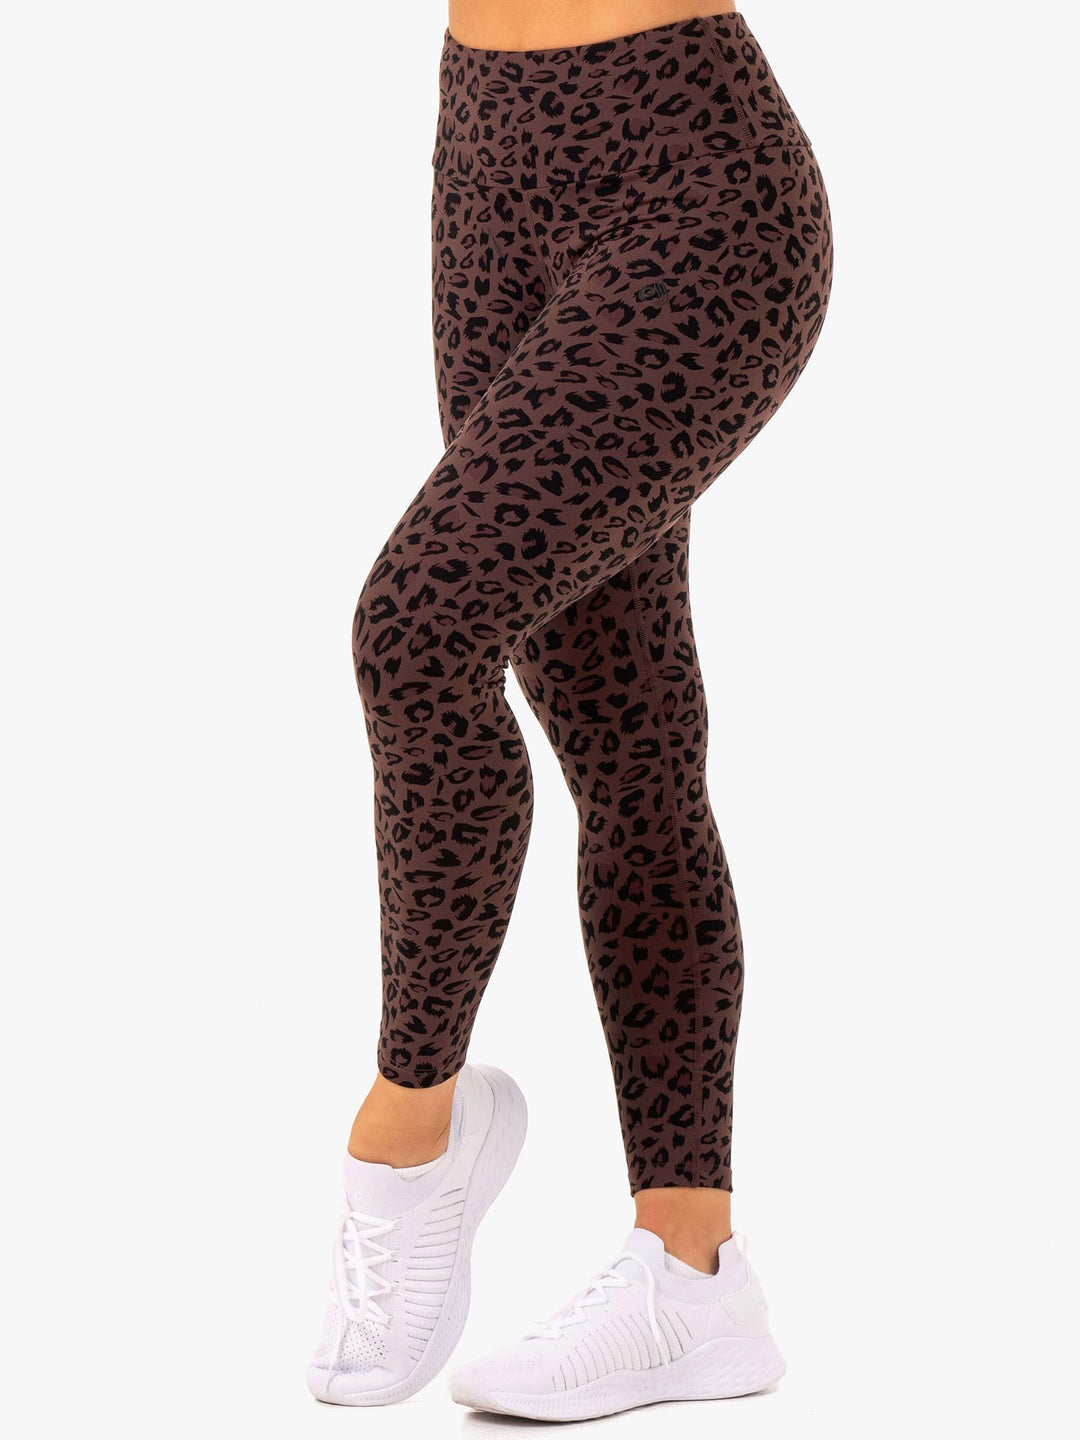 RYDERWEAR' leopard print scrunch bum leggings, size - Depop